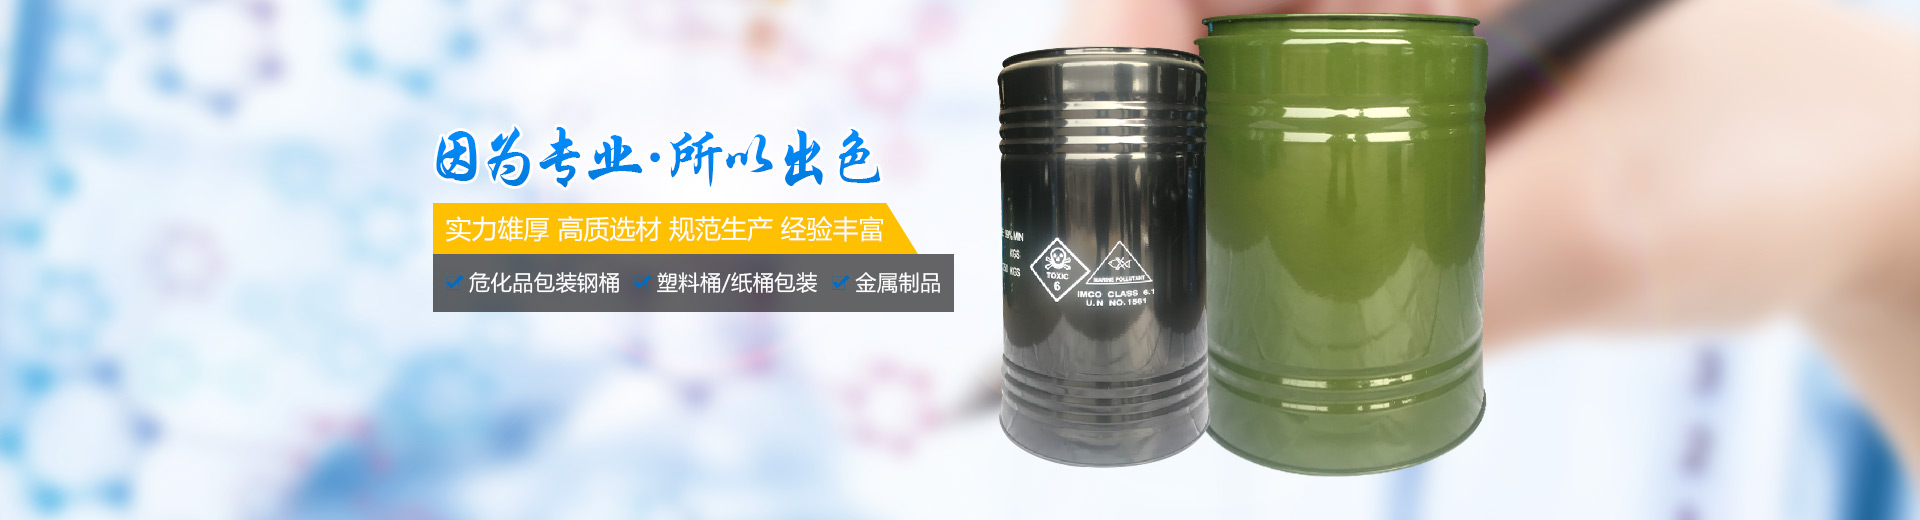 衡阳市迪伟包装有限公司_危险品包装钢桶生产|衡阳钢桶生产|危险化学品包装